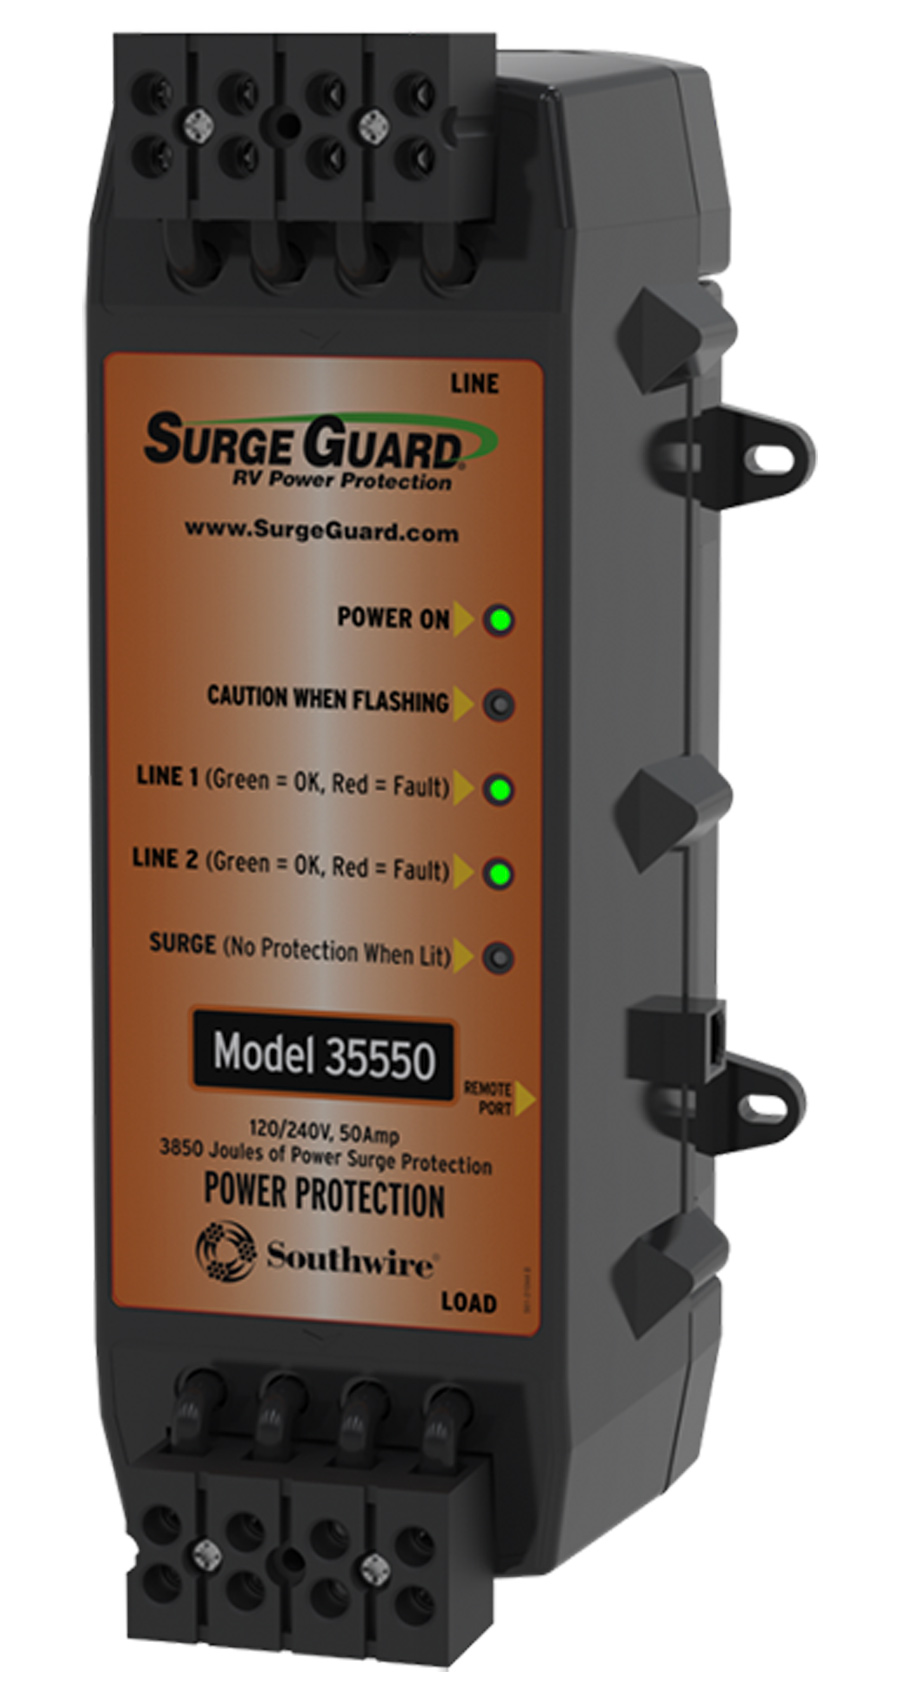 Surge Guard 34931 product shot